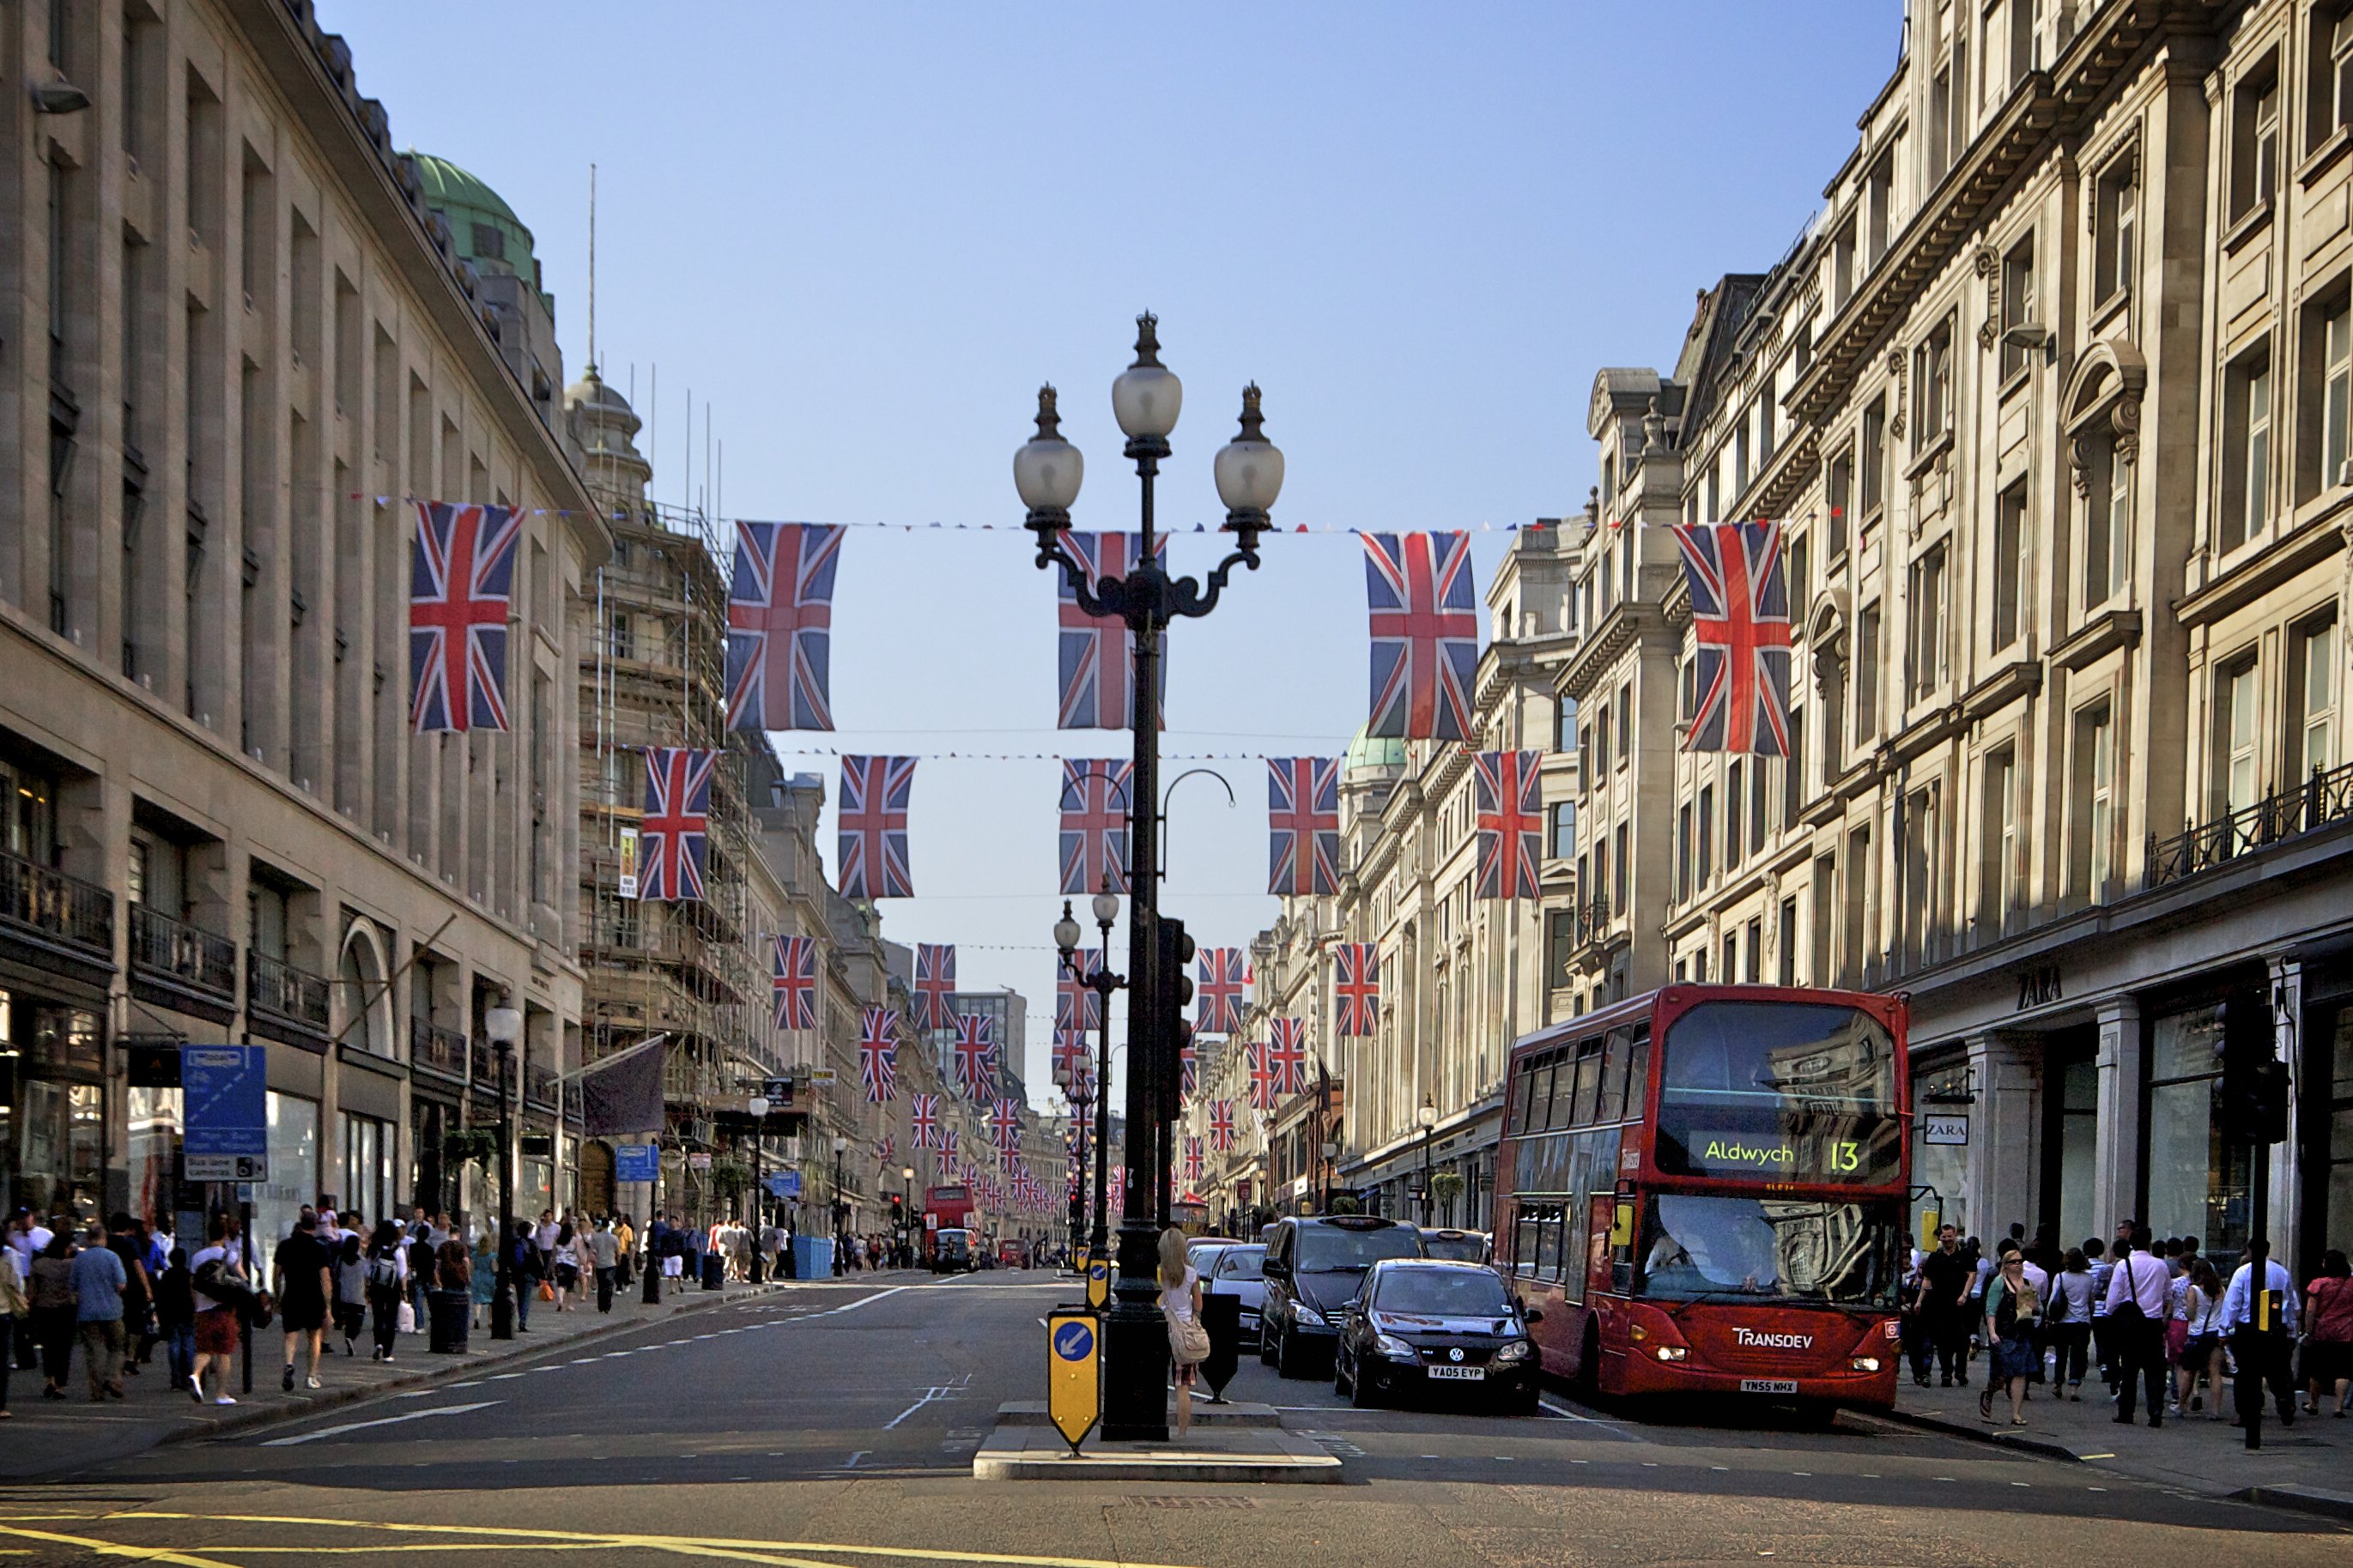 File:Regent Street London.jpg - Wikimedia Commons